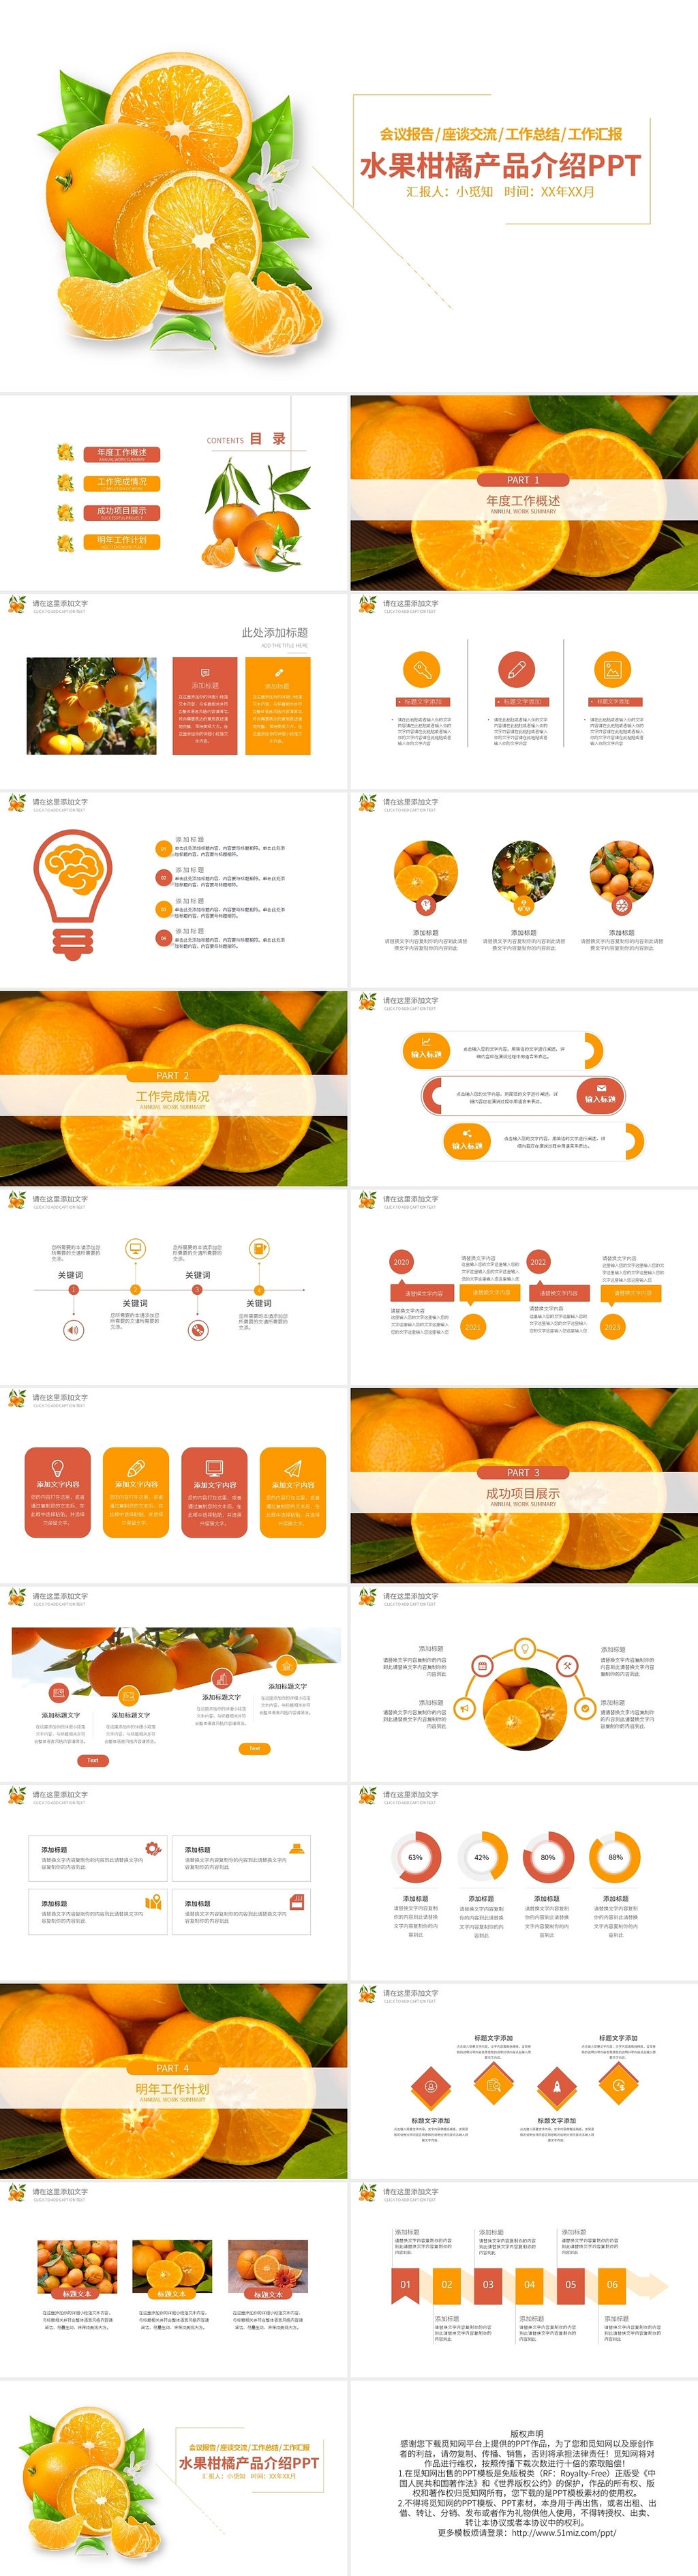 水果柑橘产品介绍PPT模板宣传PPT动态PPT